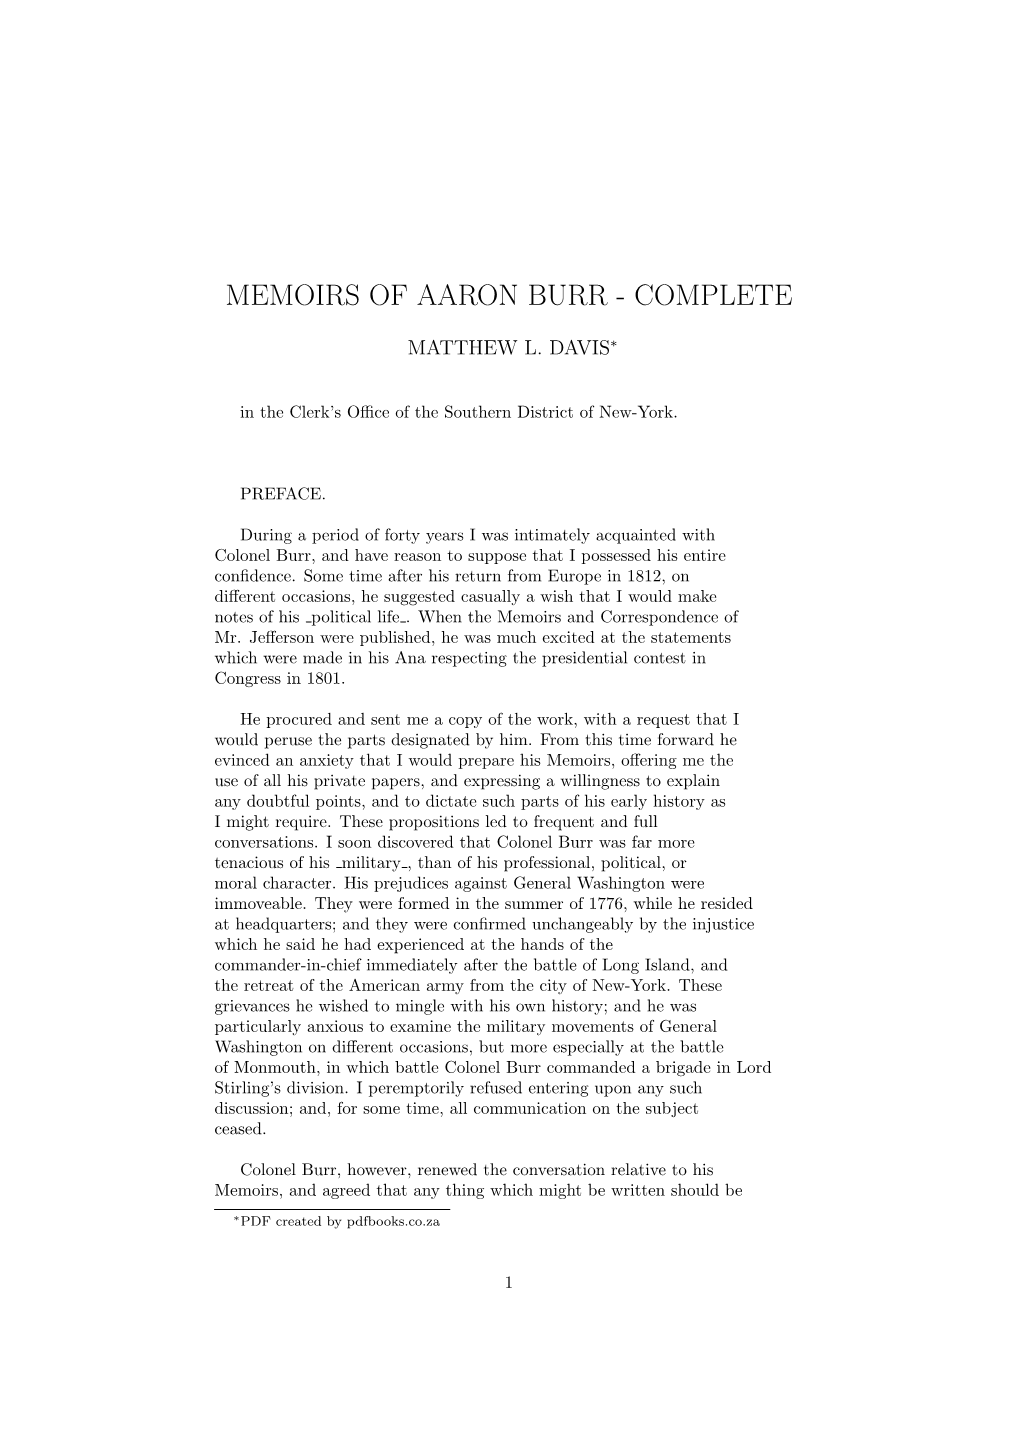 Memoirs of Aaron Burr - Complete